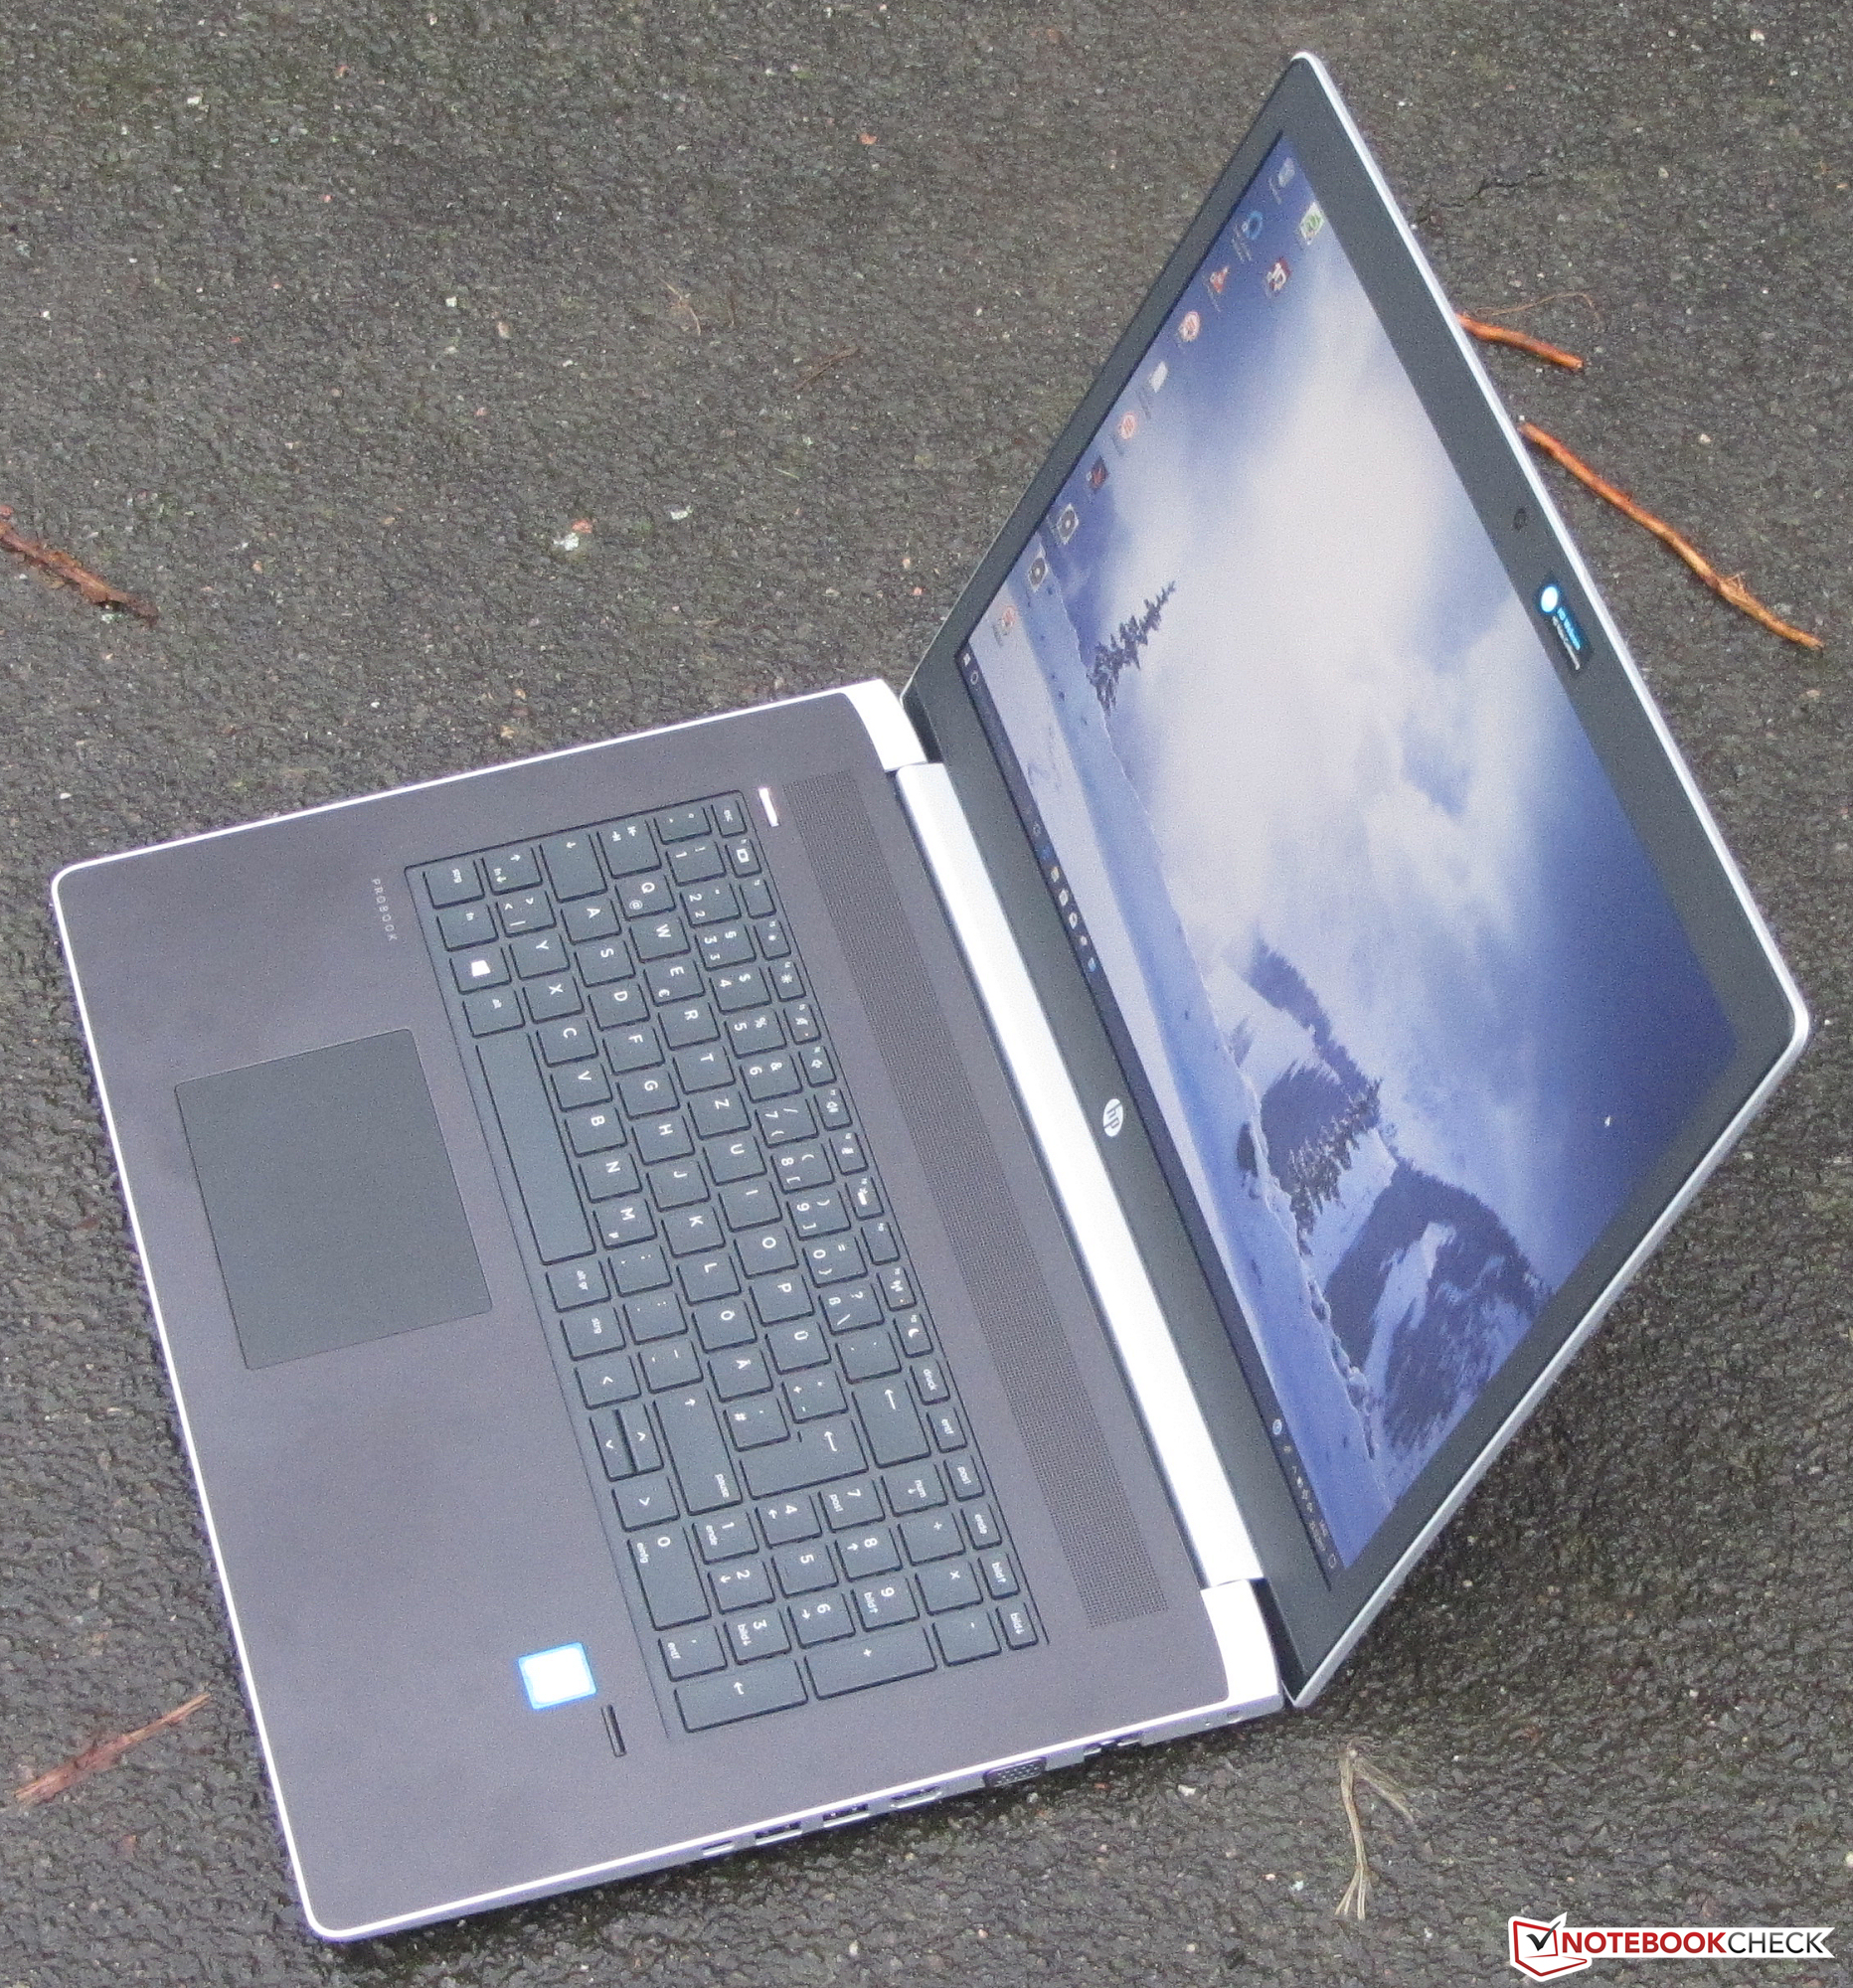 HP ProBook 470 G5 (i5-8250U, 930MX, SSD, FHD) Laptop Review - NotebookCheck.net Reviews